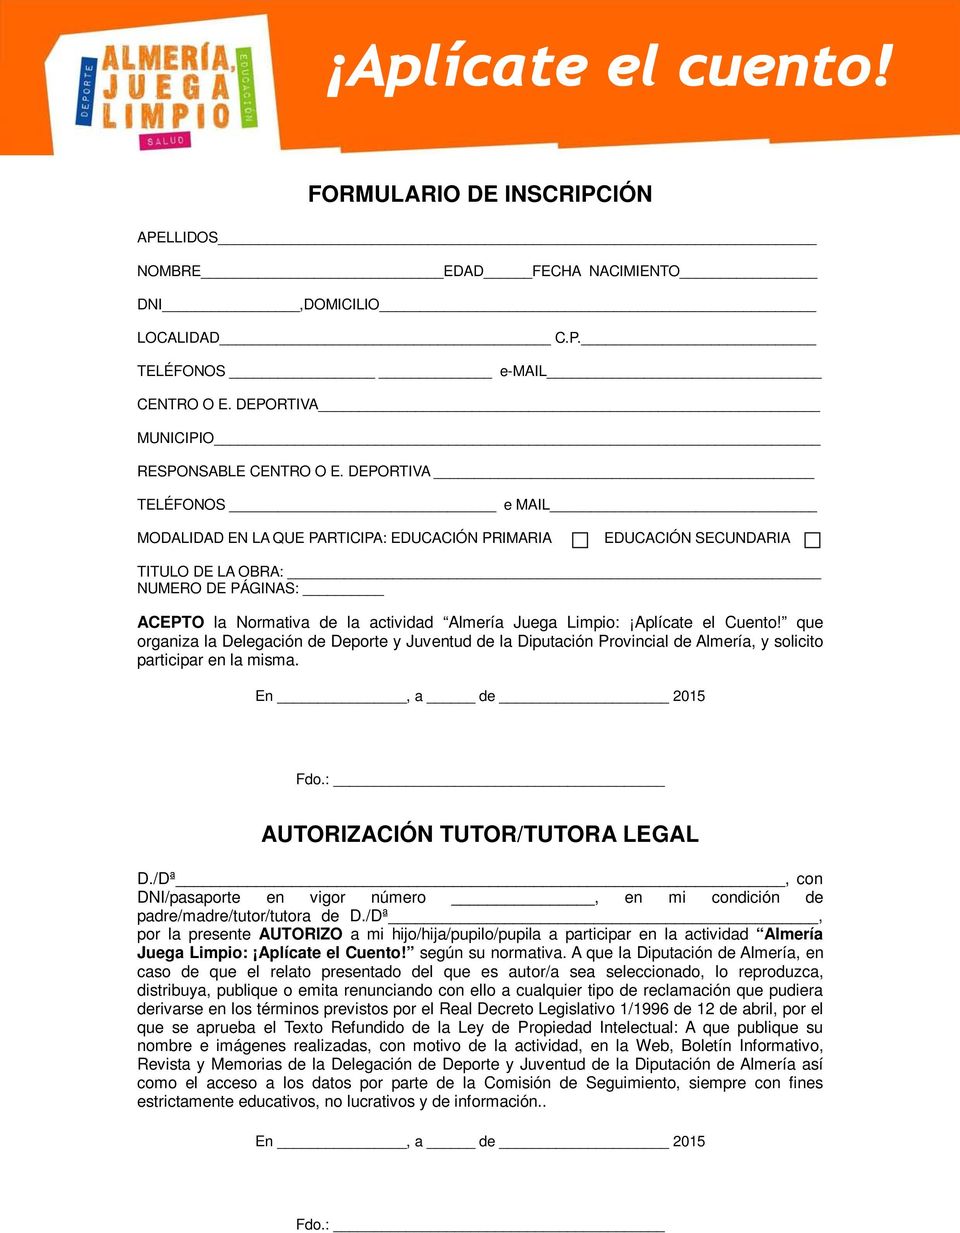 Aplícate el Cuento! que organiza la Delegación de Deporte y Juventud de la Diputación Provincial de Almería, y solicito participar en la misma. En, a de 2015 Fdo.: AUTORIZACIÓN TUTOR/TUTORA LEGAL D.